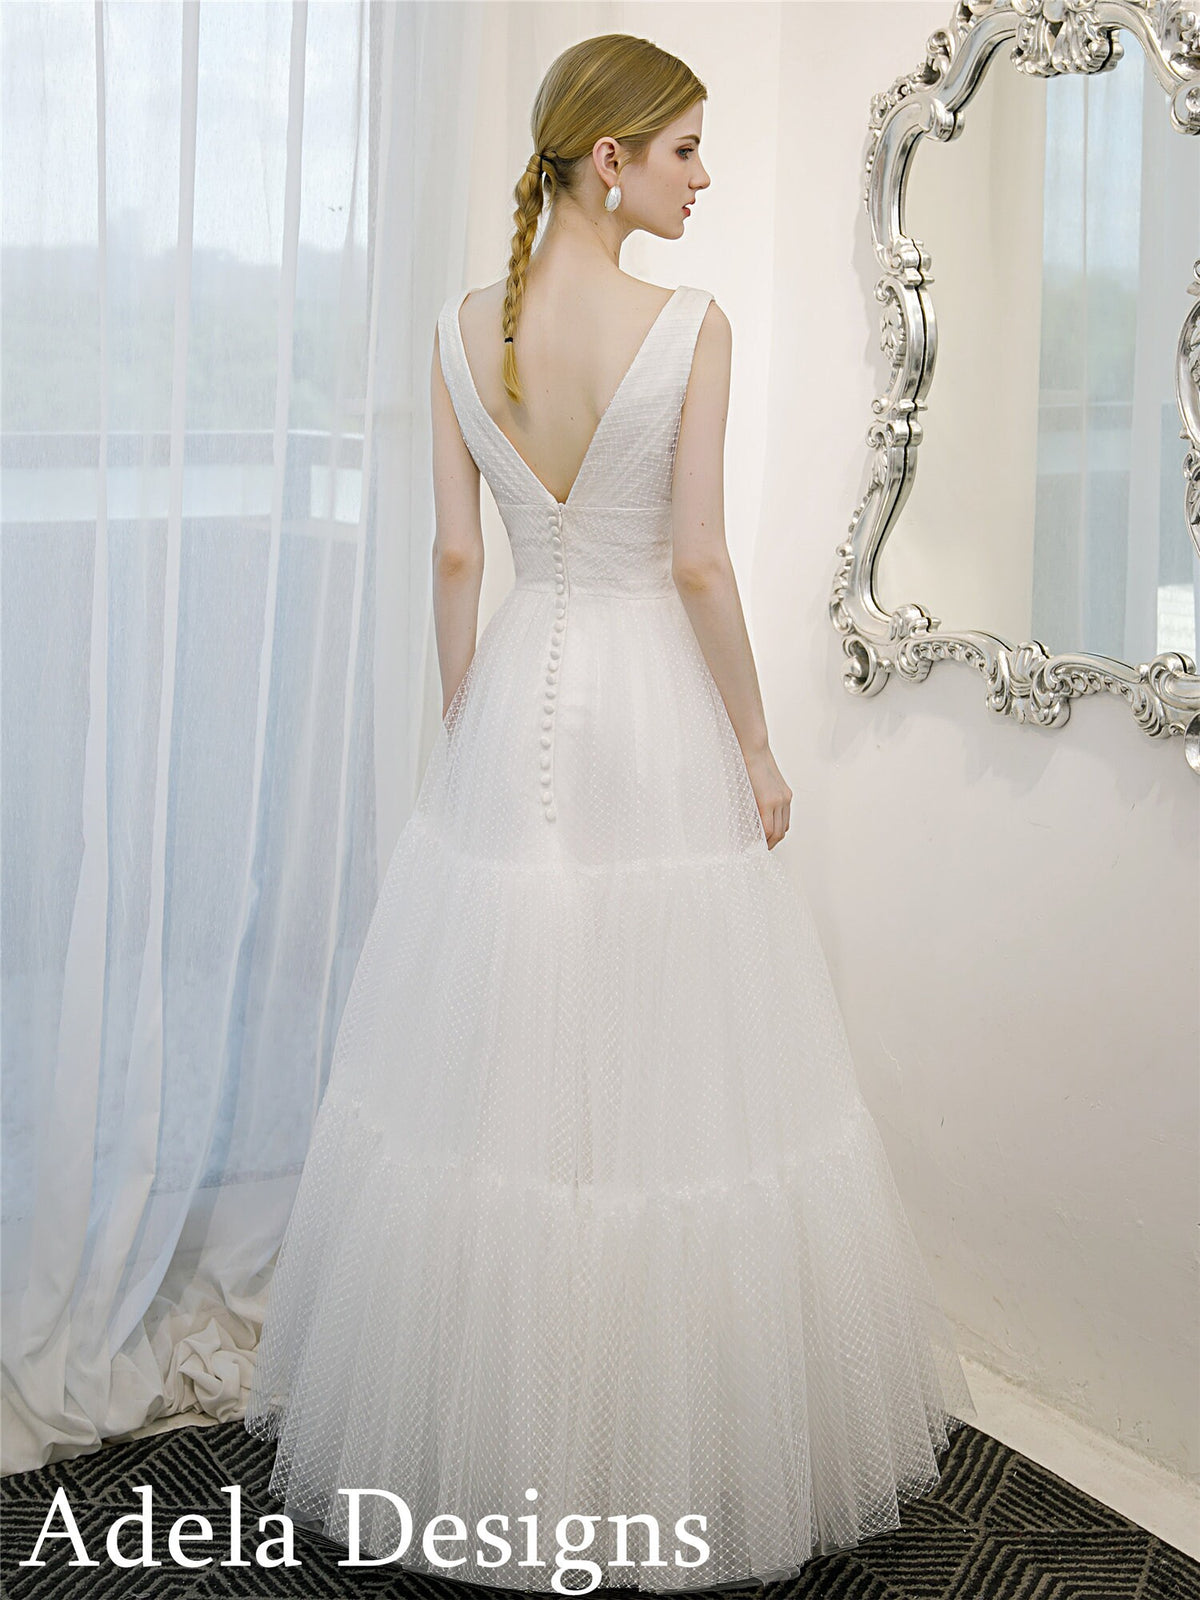 Vintage Boho Style Ankle Length Polka Dot Tulle Wedding Dress Bridal Gown Sleeveless Open Back V Neckline Aline